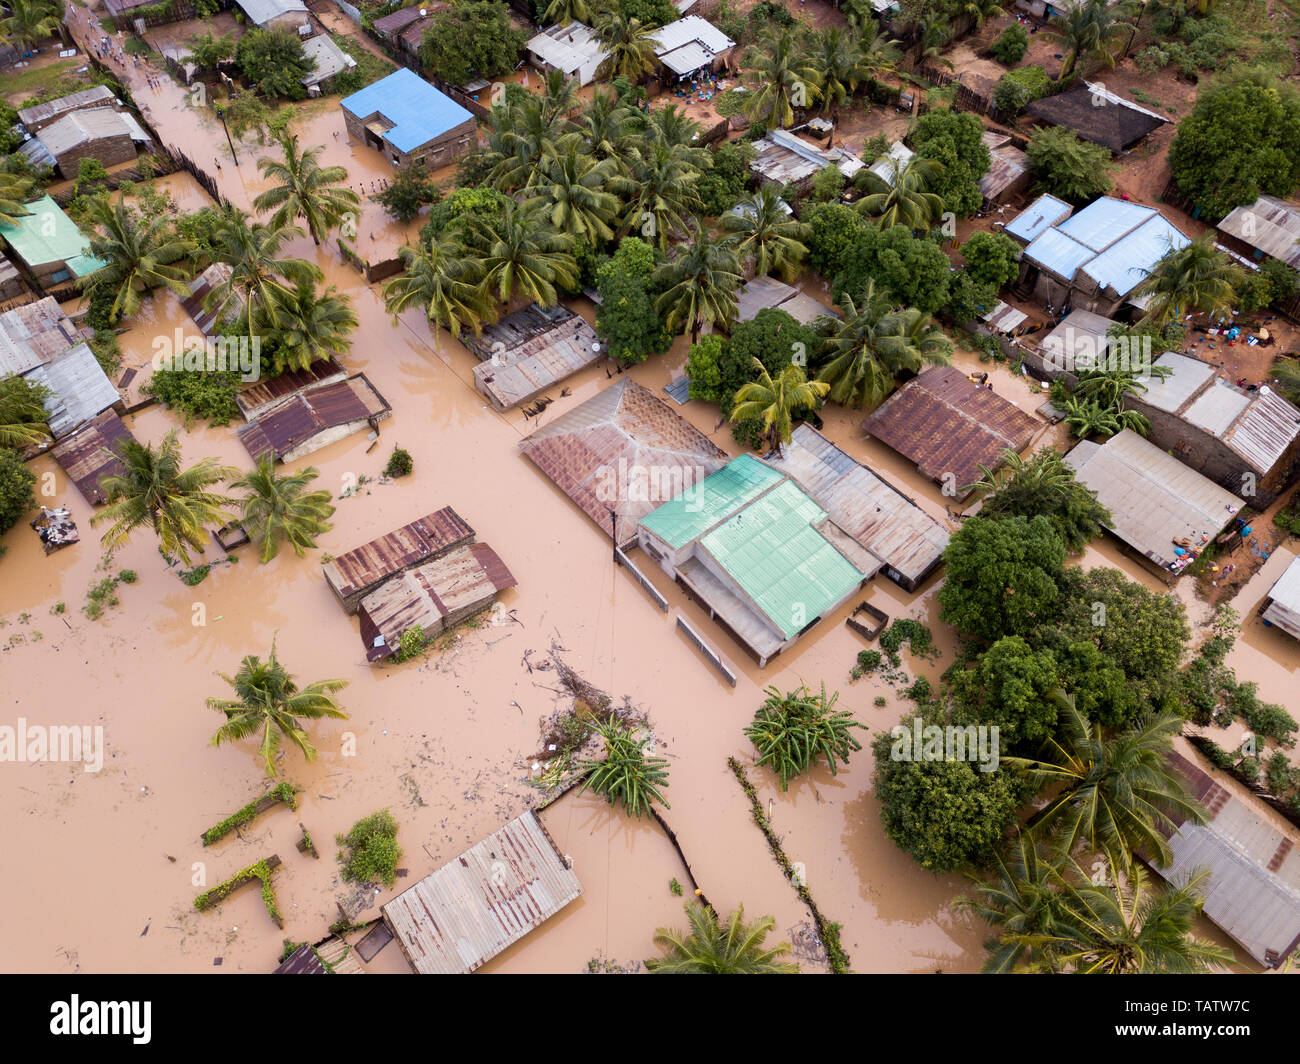 Vista aérea sobrecarga casas inundadas después de un ciclón Foto de stock